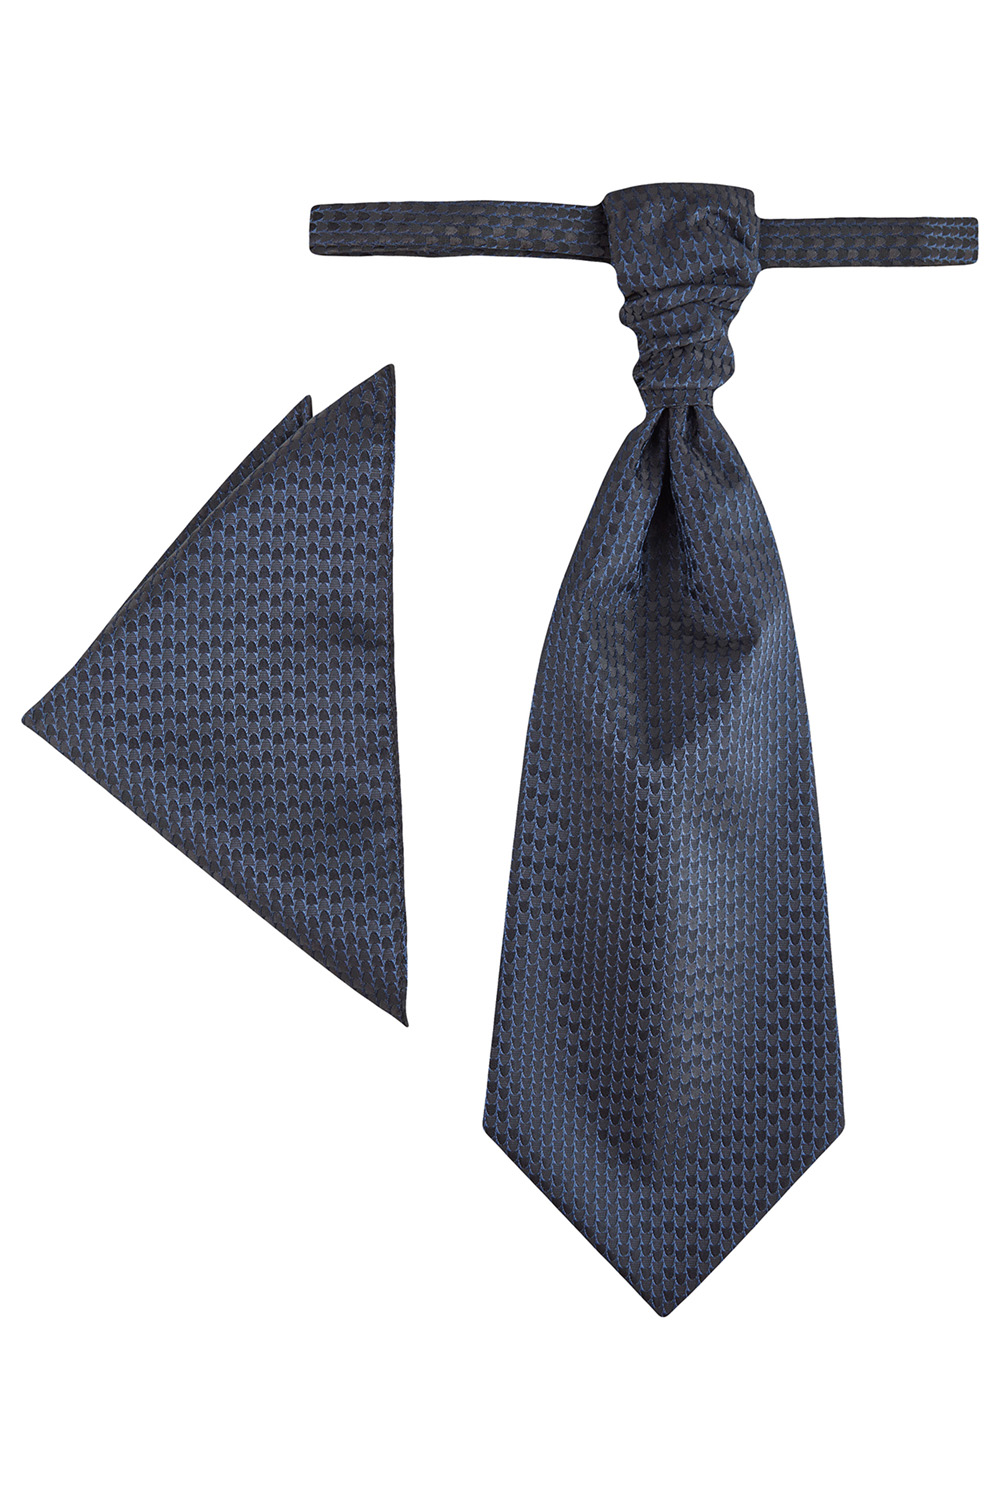 WILVORST francia nyakkendő 447206-31 Modell-0622